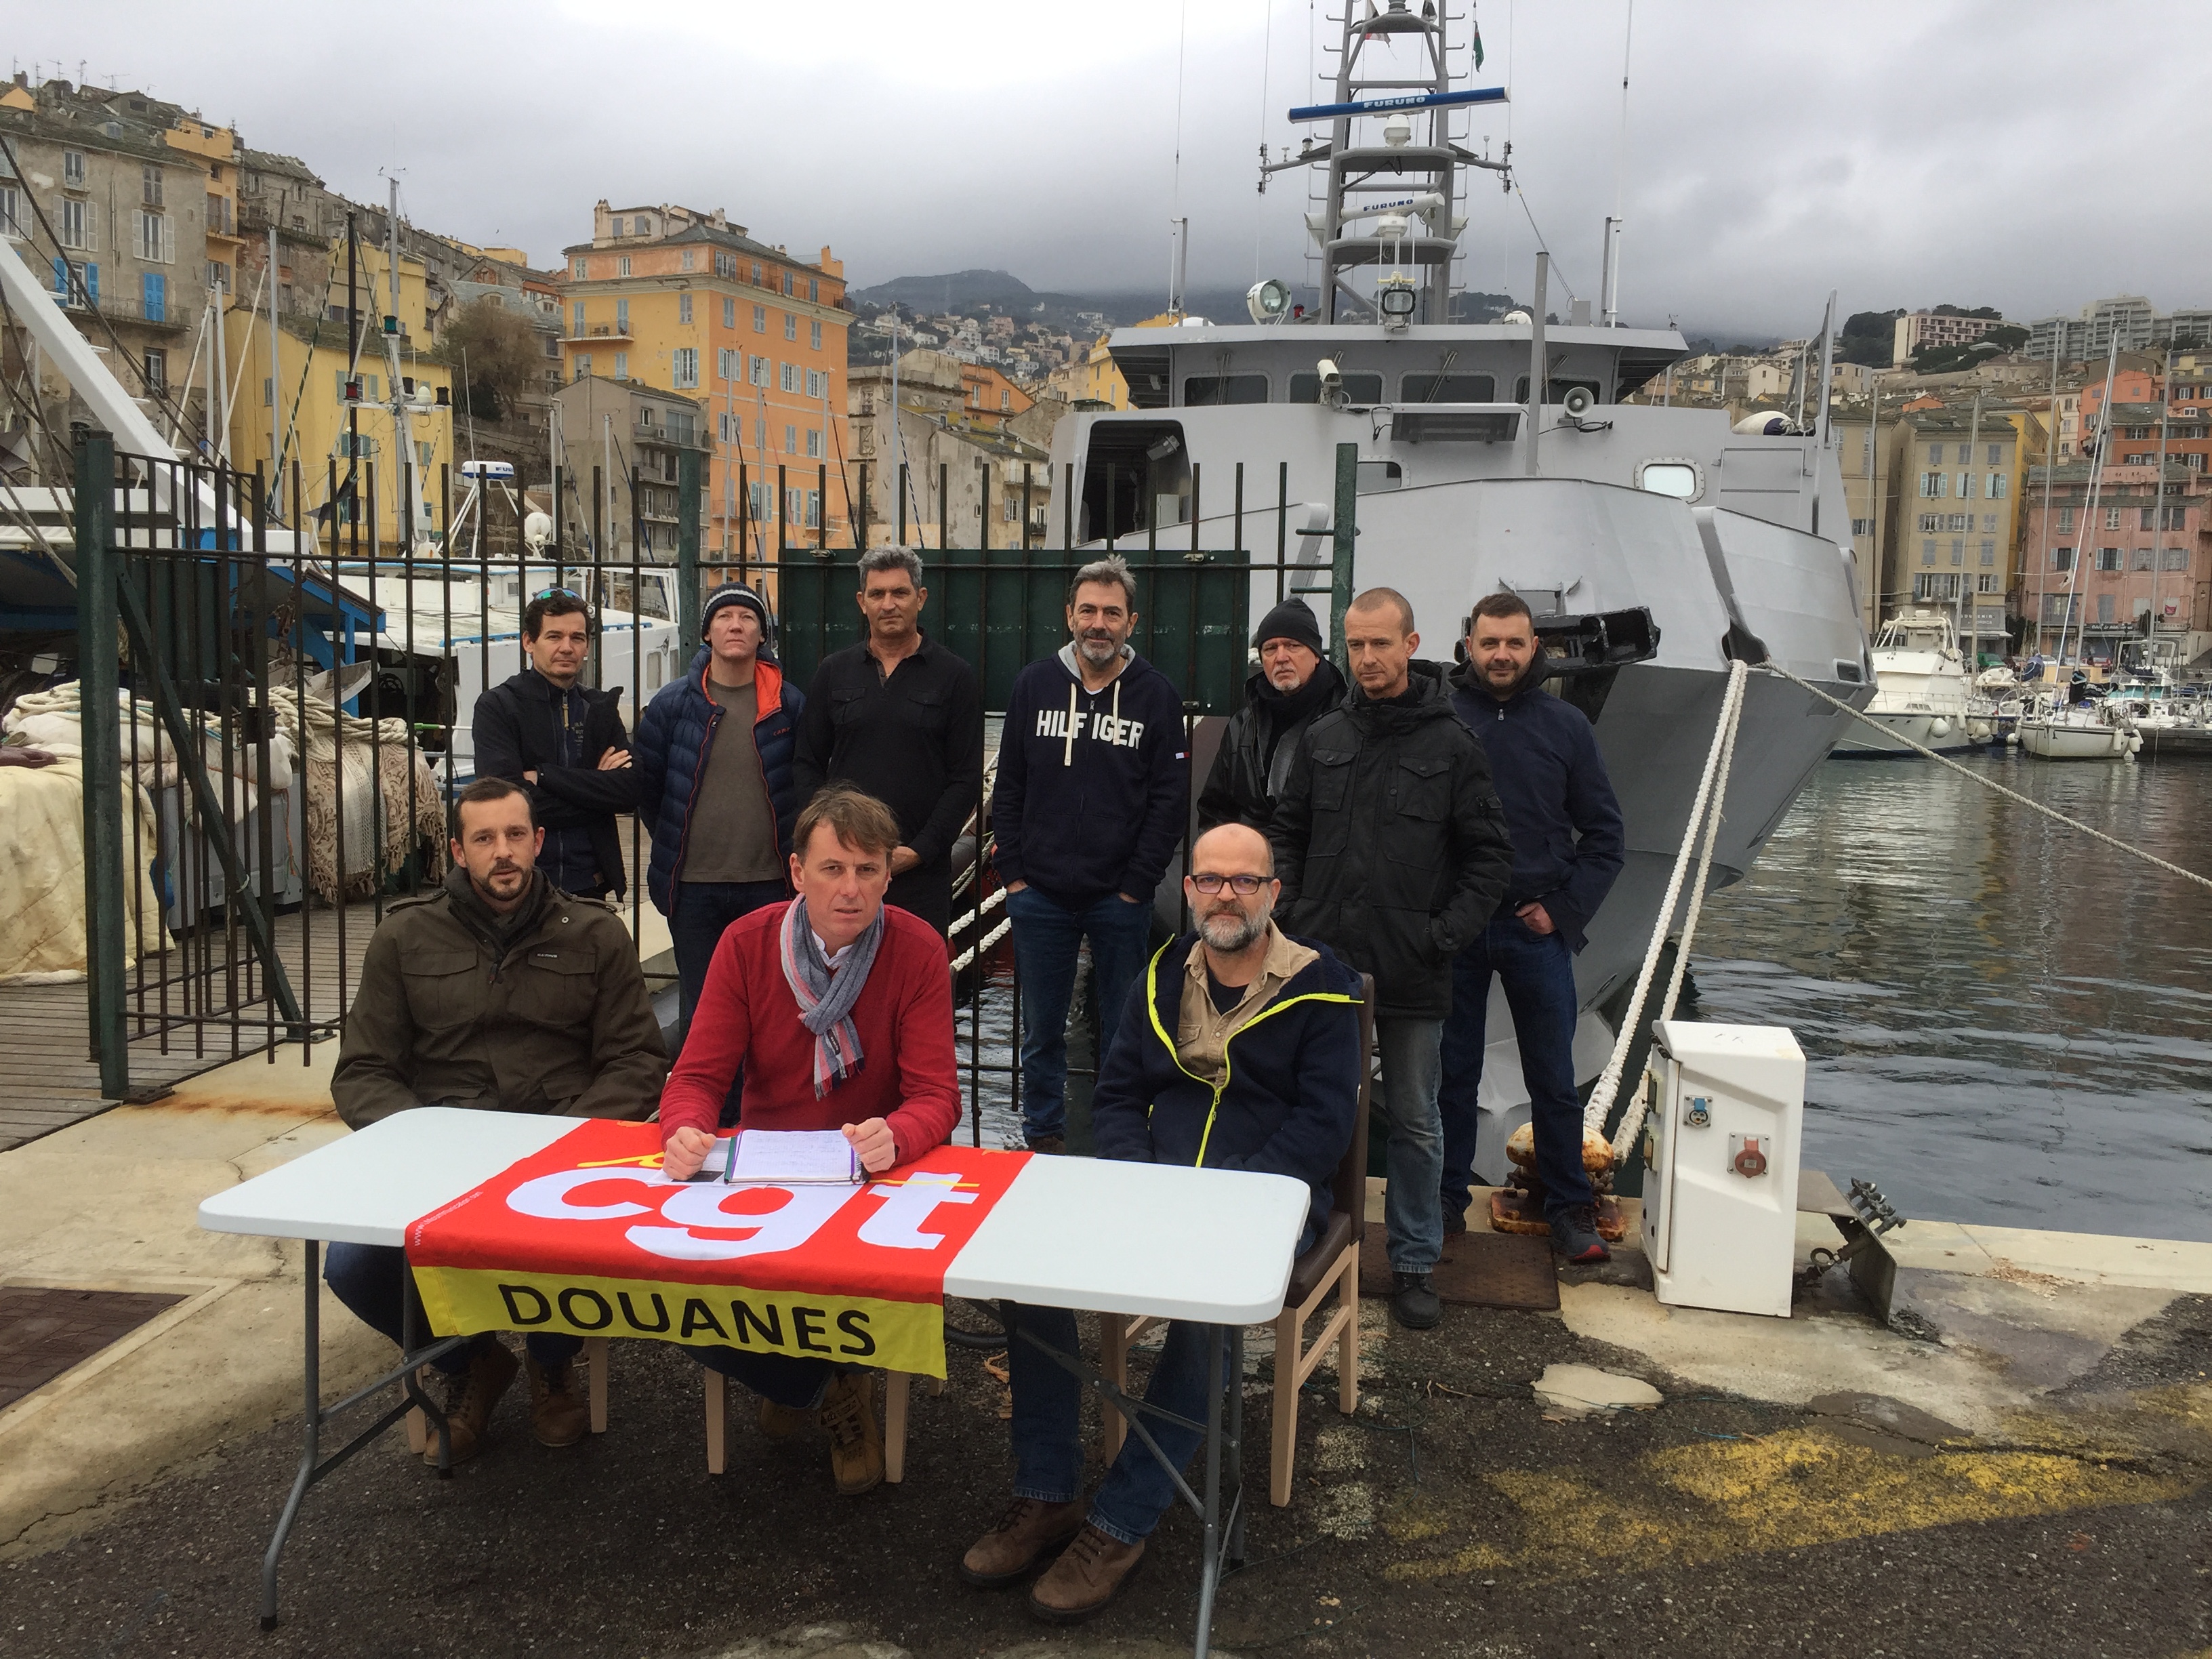 Les douaniers garde-cotes de Bastia en grève eux aussi contre la réforme des retraites